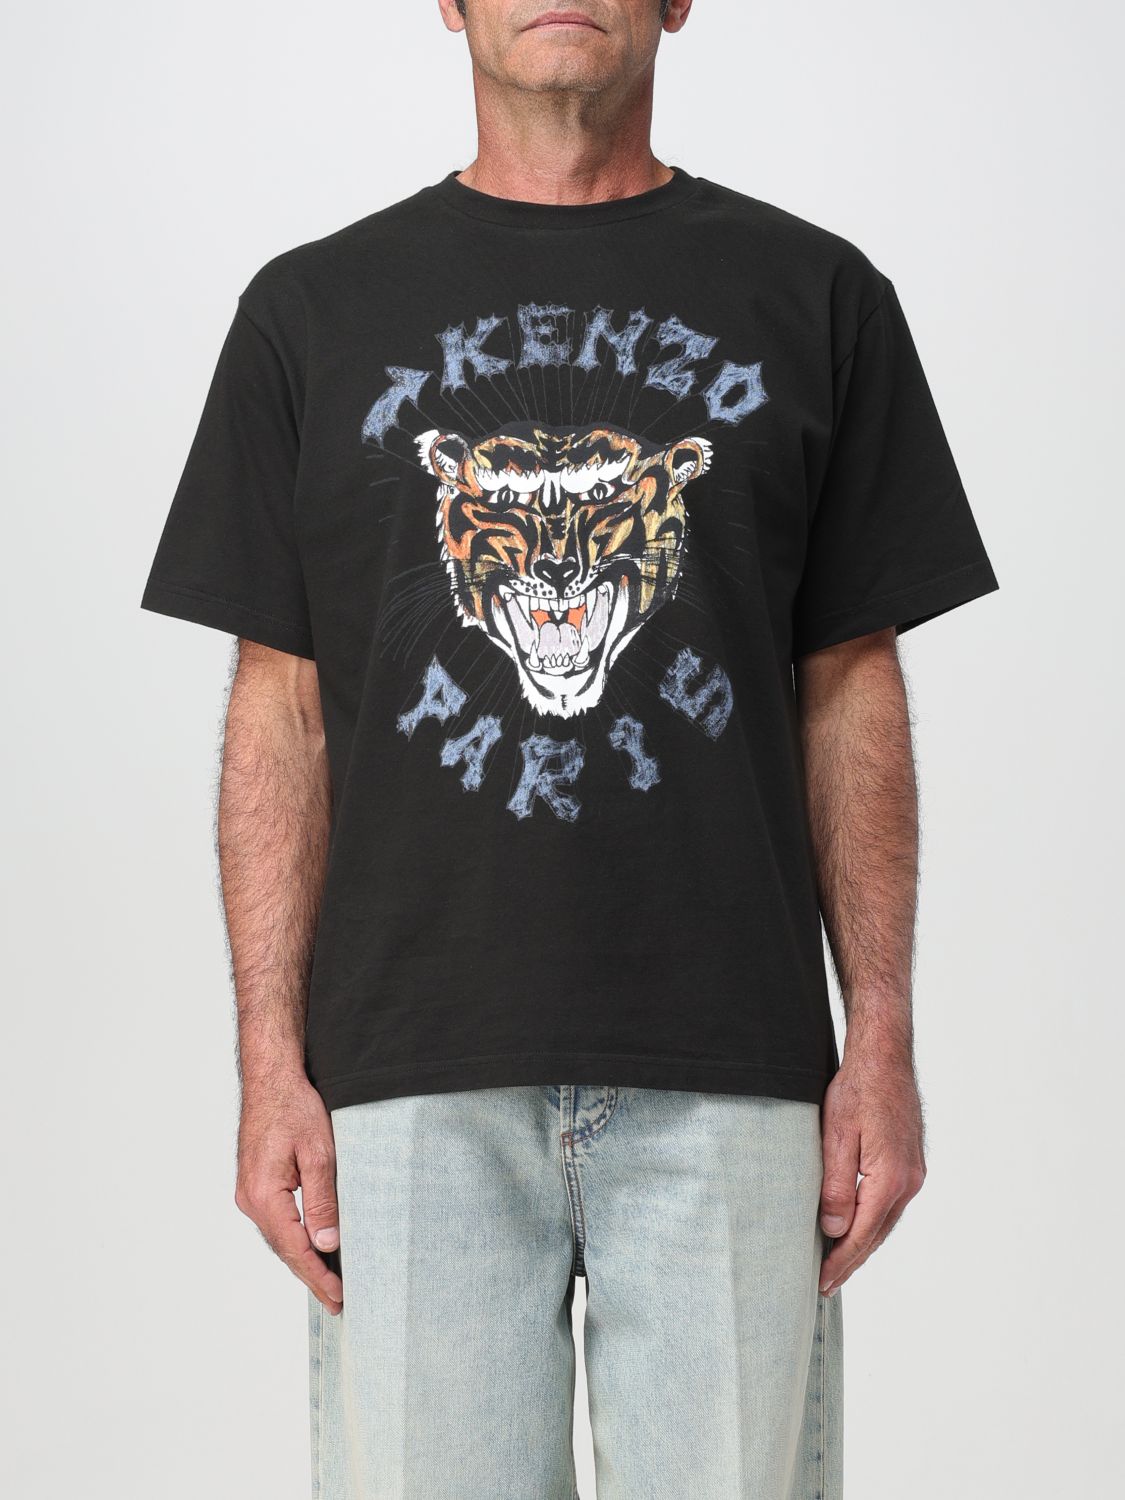 Shop Kenzo T-shirt  Men Color Black